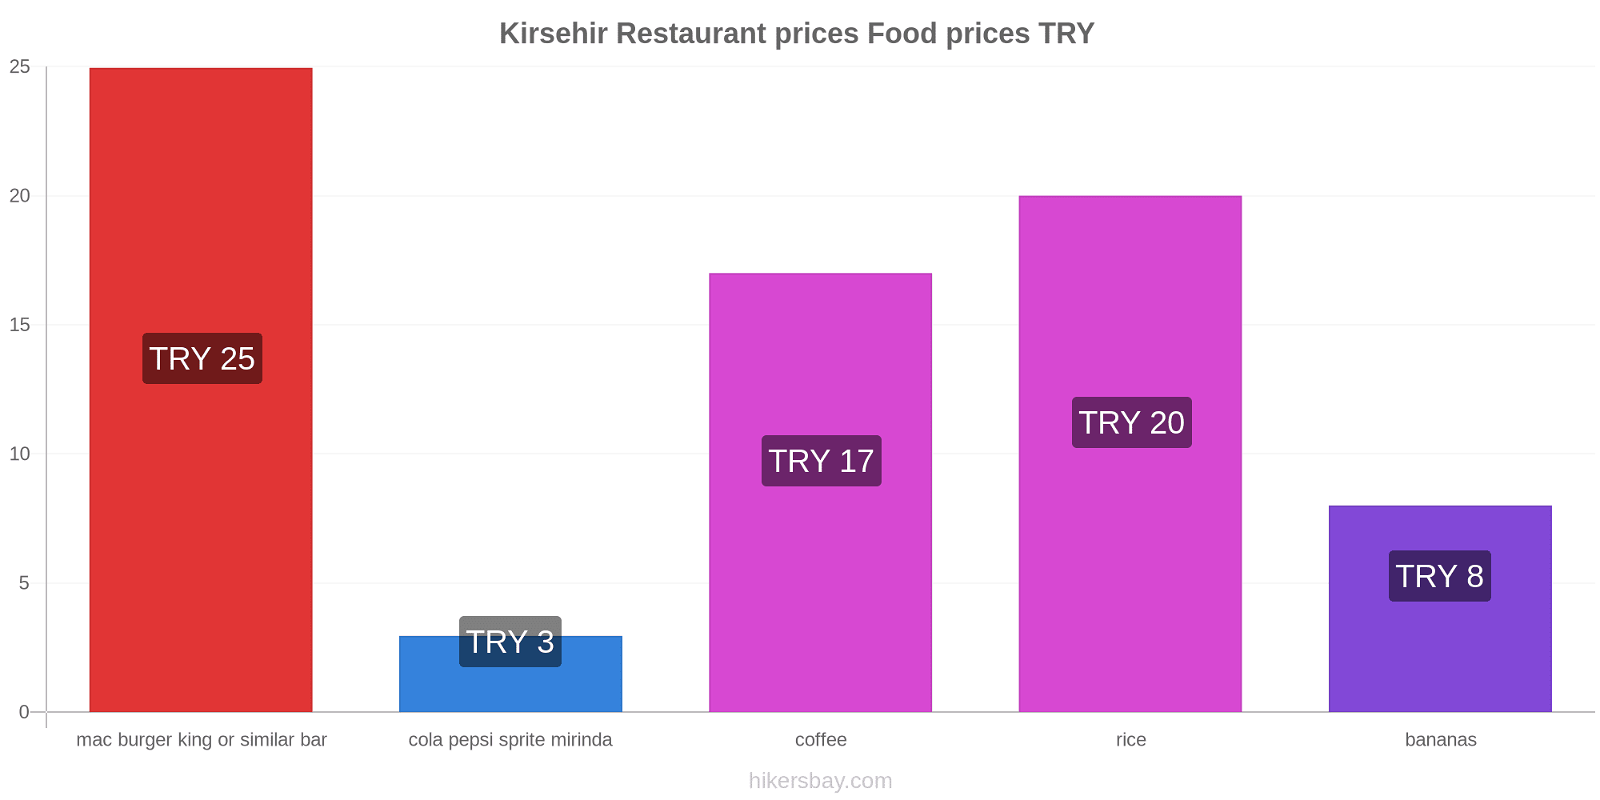 Kirsehir price changes hikersbay.com